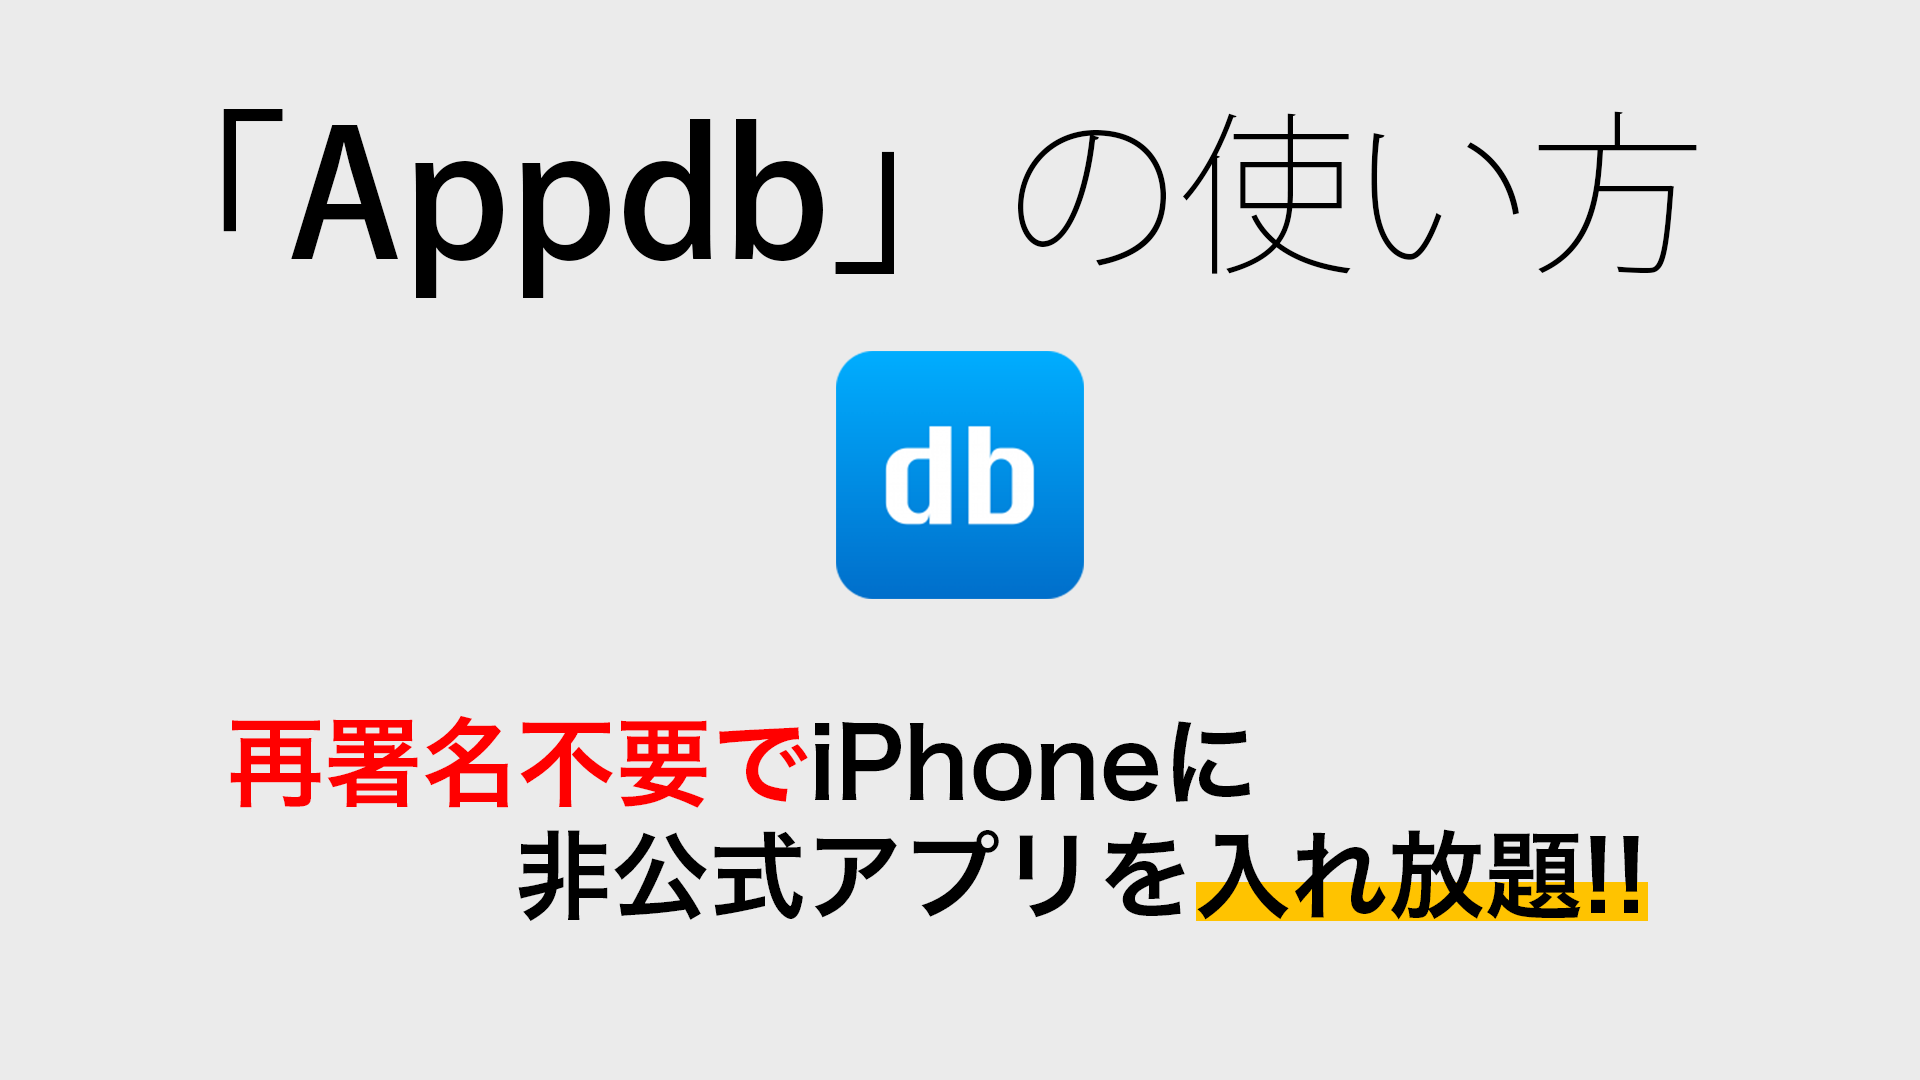 appdb - 【脱獄不要】再署名不要でiPhoneに非公式アプリ入れ放題!!「Appdb」の使い方!